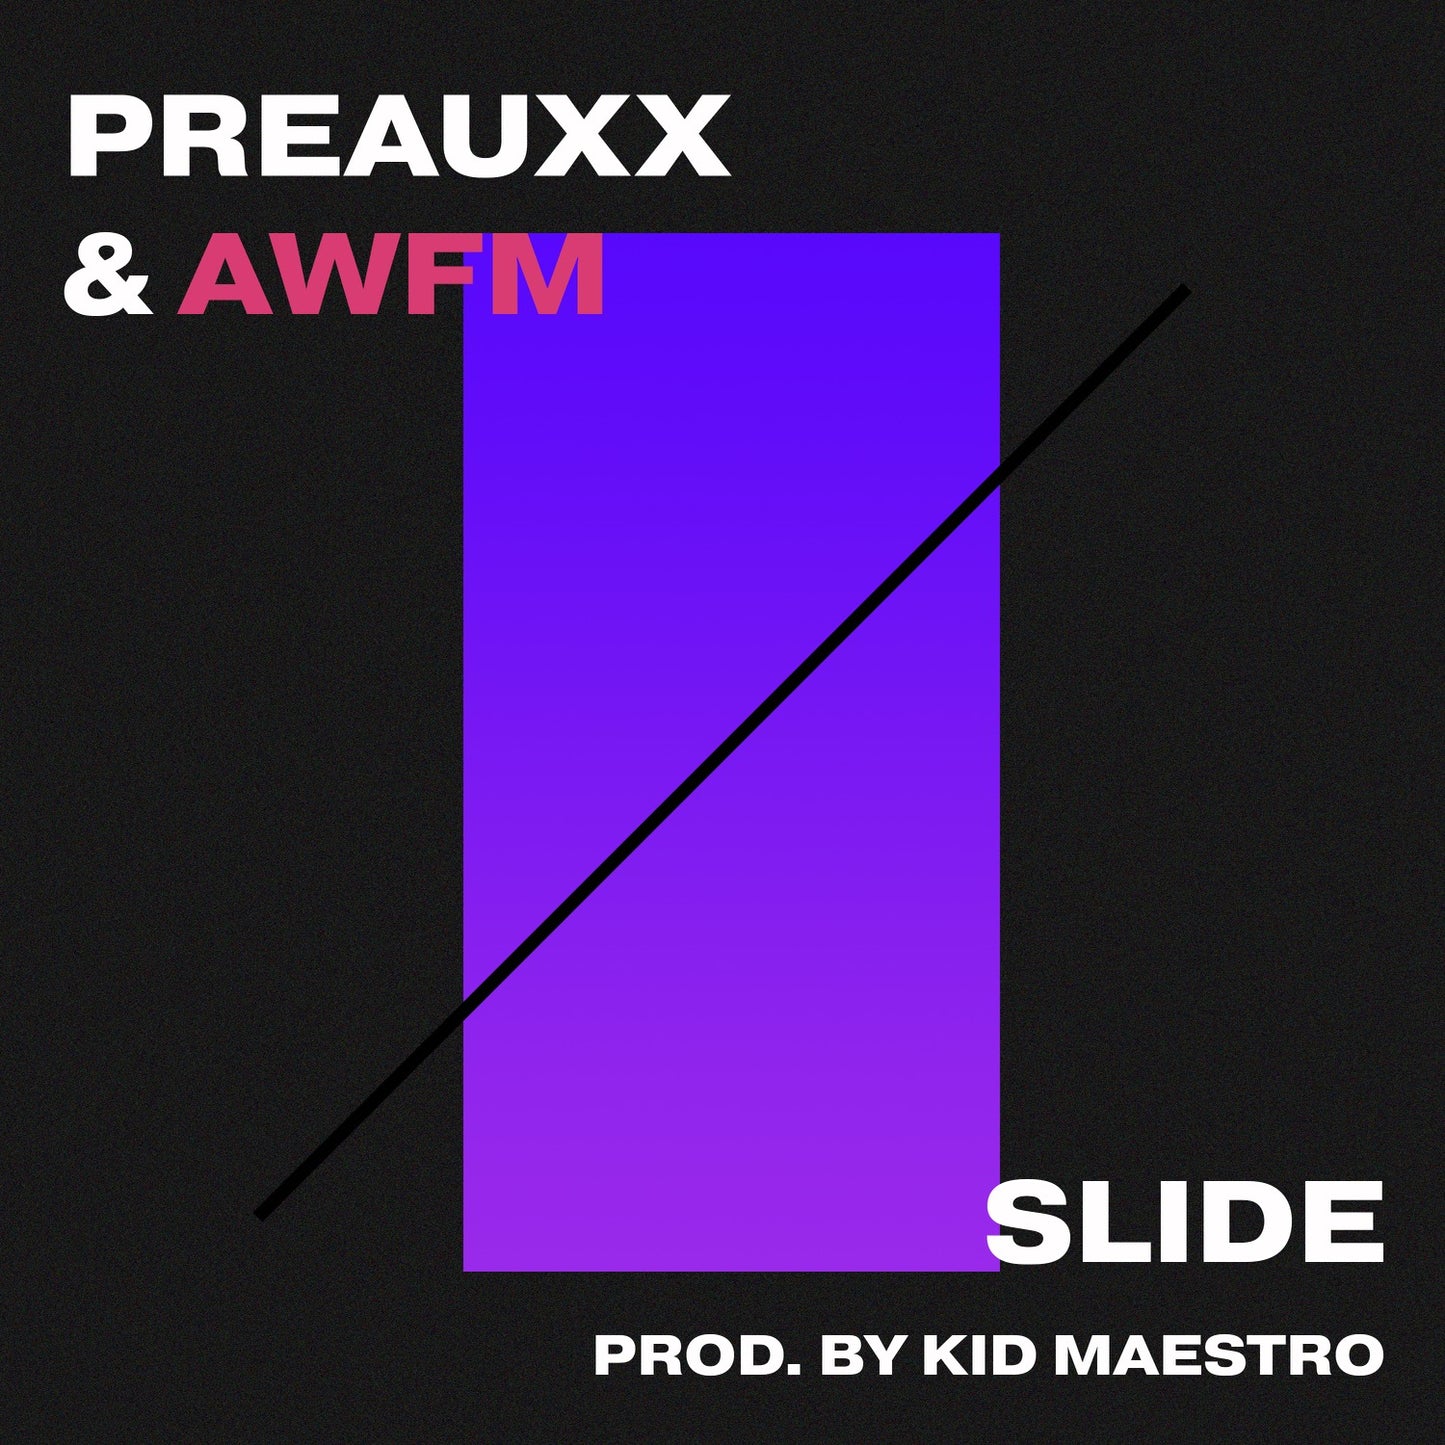 Preauxx & AWFM - Slide (Single)